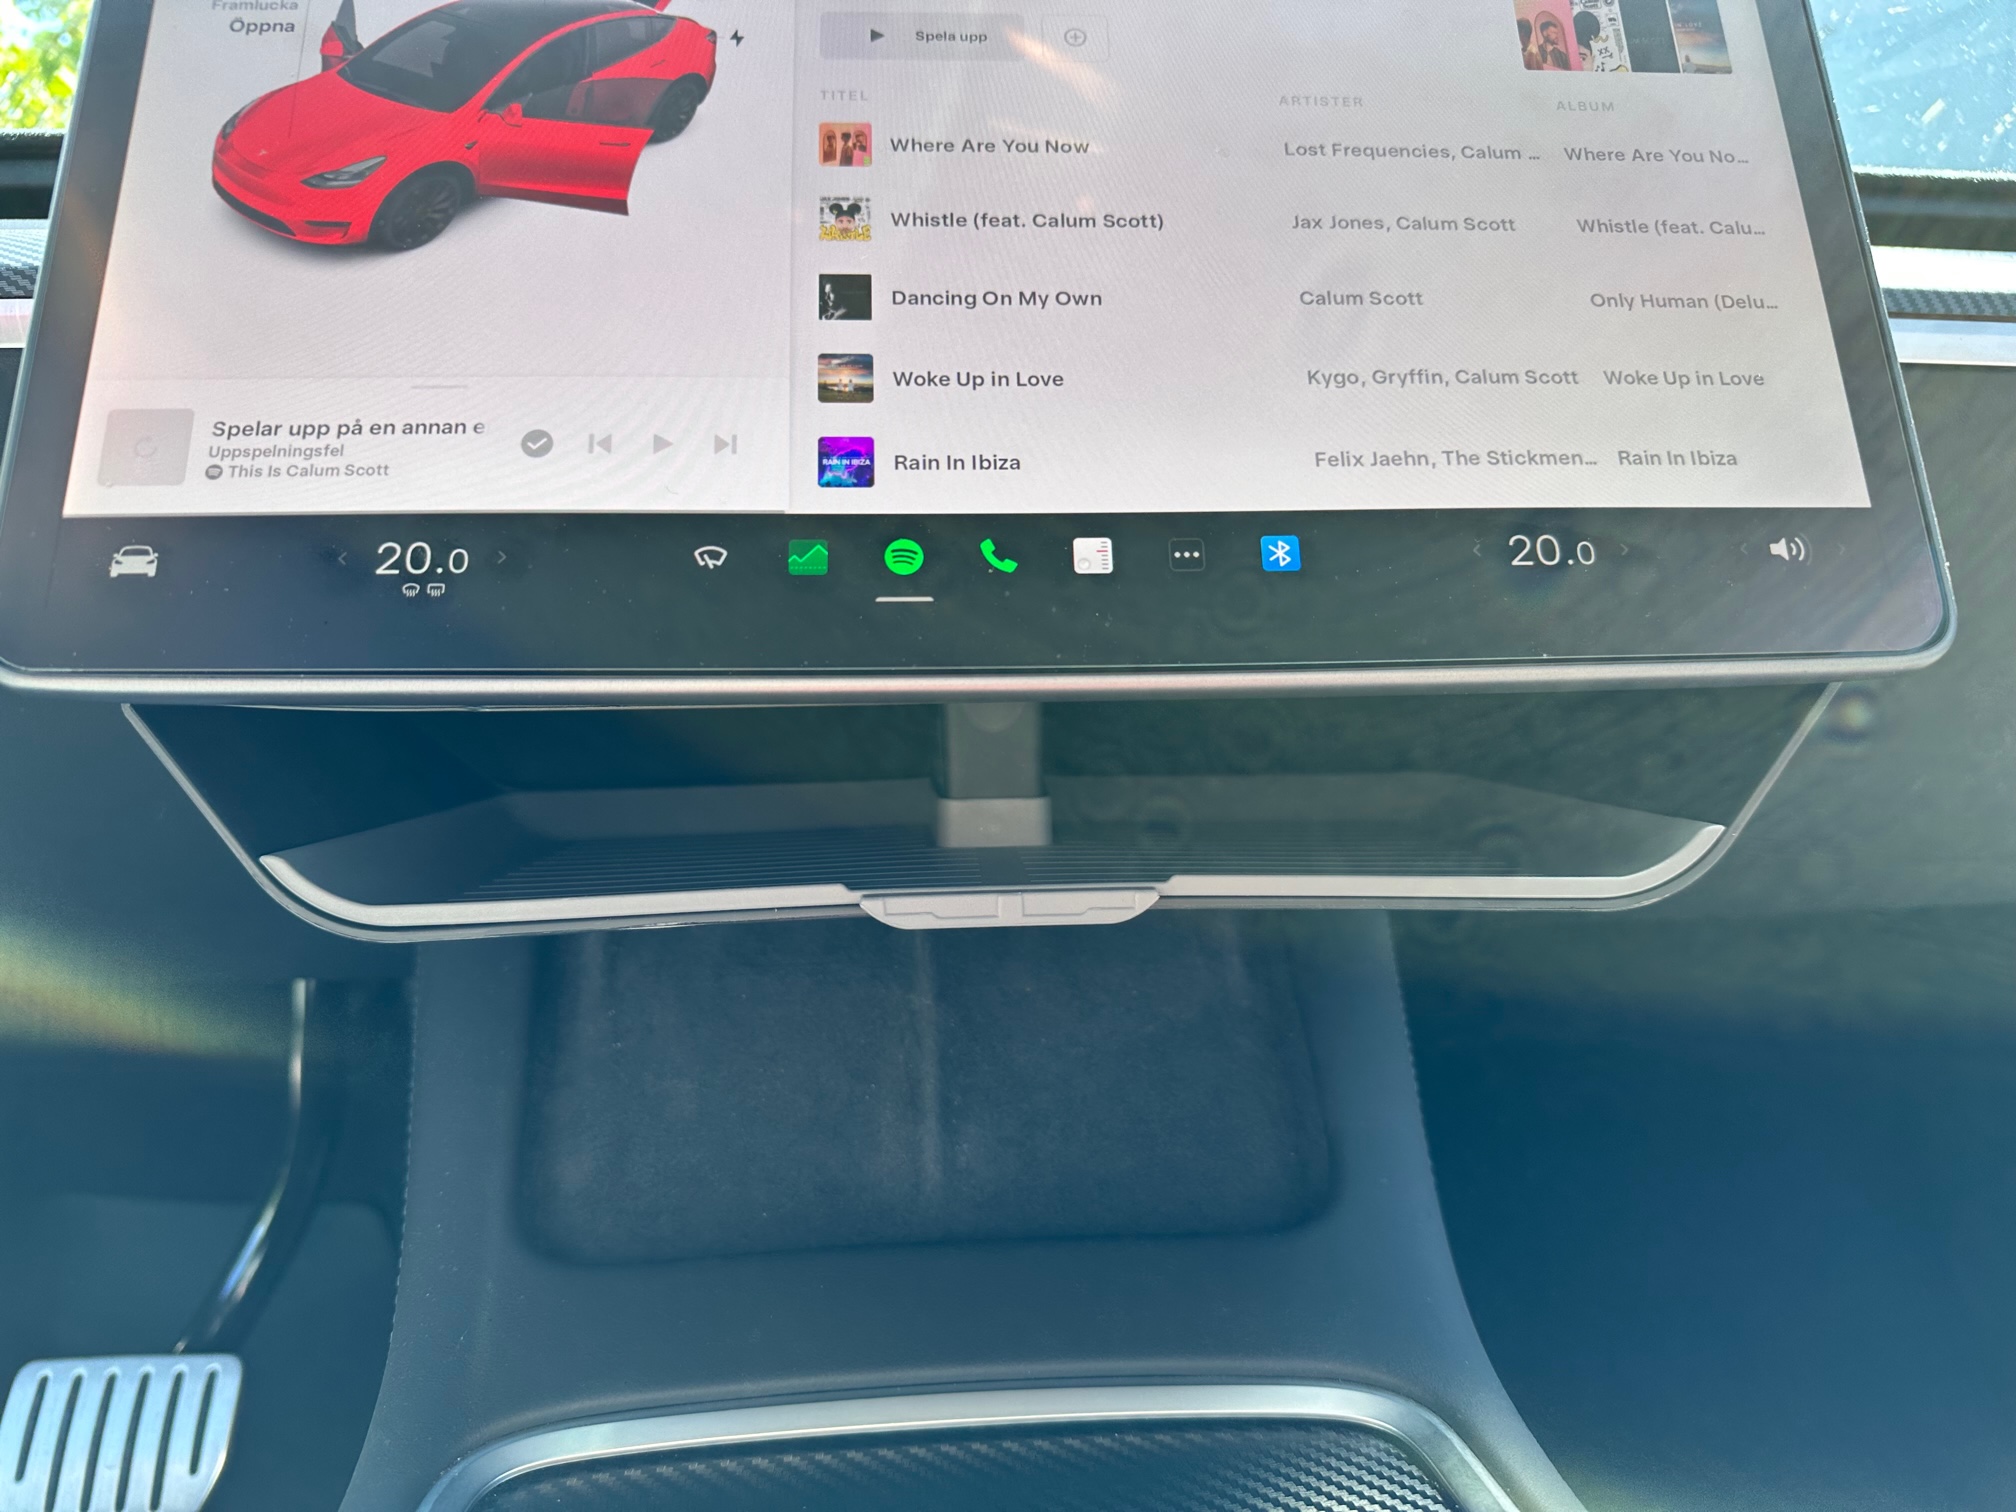 Förvaring under skärmen  - Tesla Model 3/Y